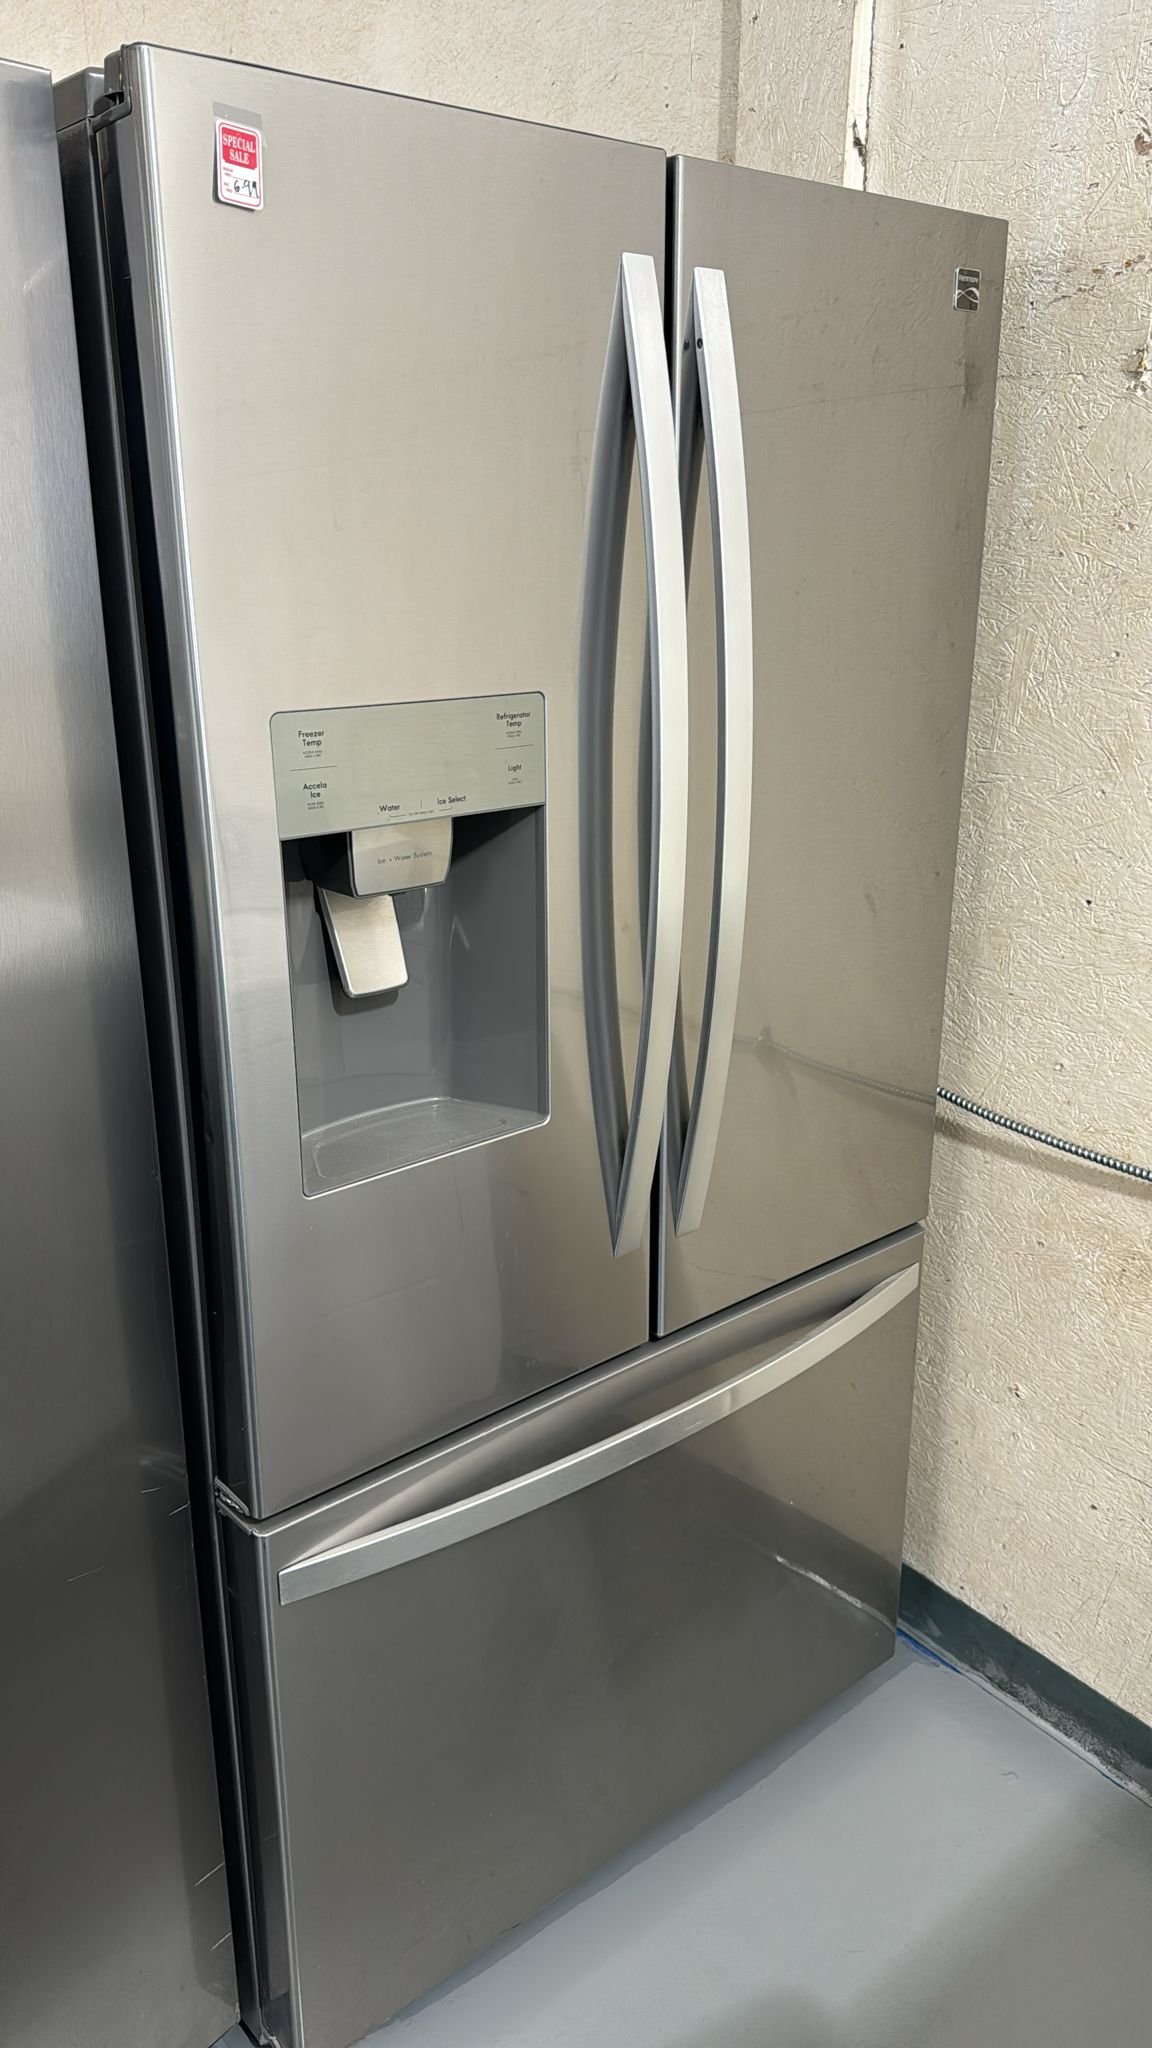 Kenmore Like New 3 Door French Door Refrigerator – Stainless